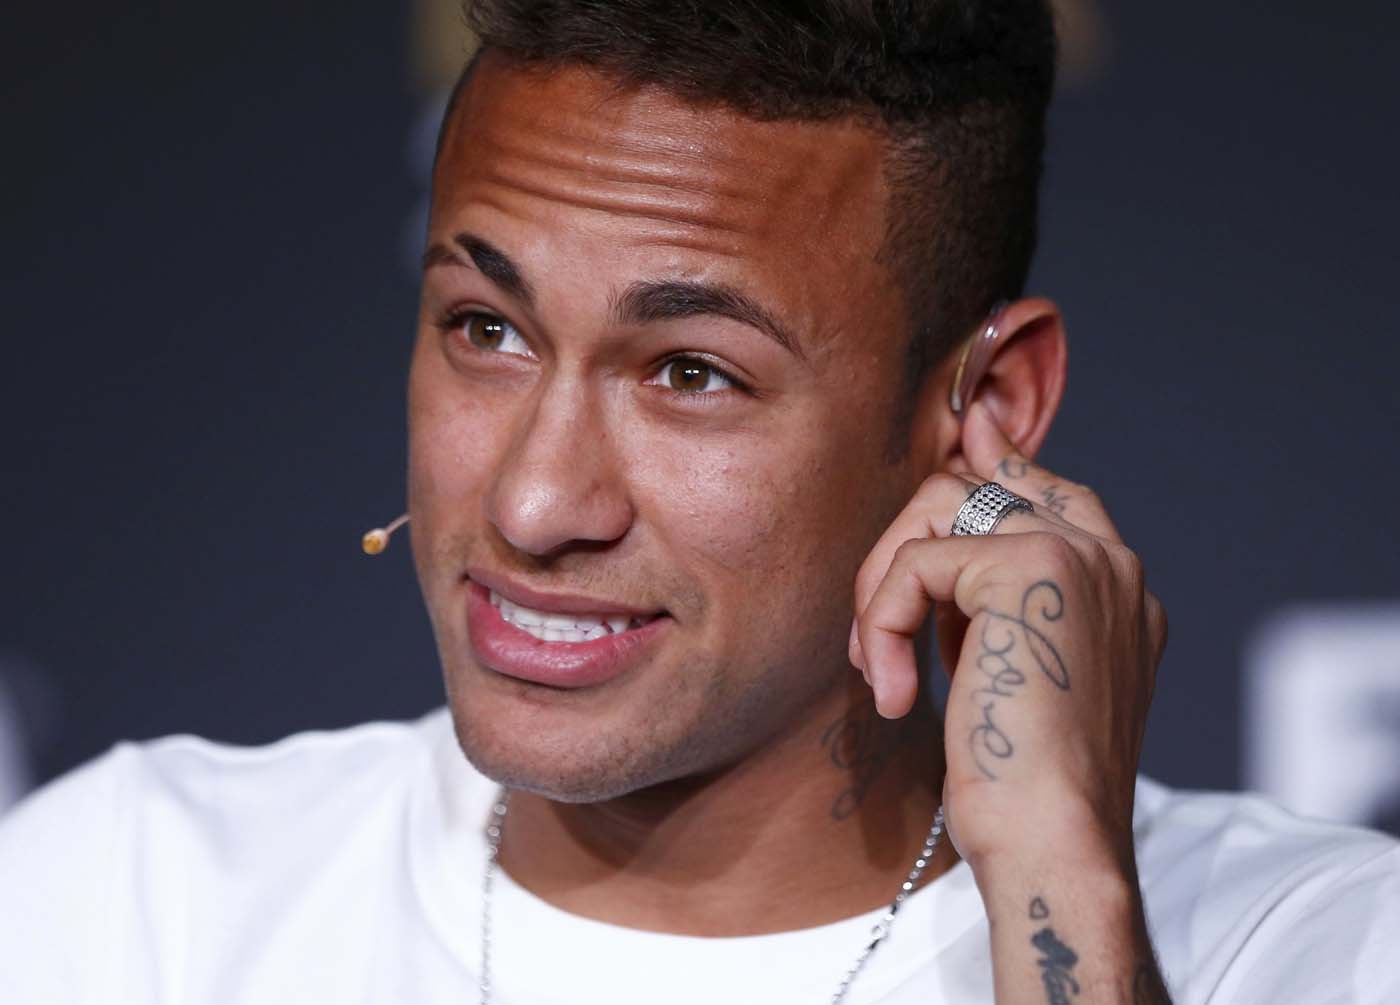 Asesores de Neymar reafirman que sus contratos respetan la ley